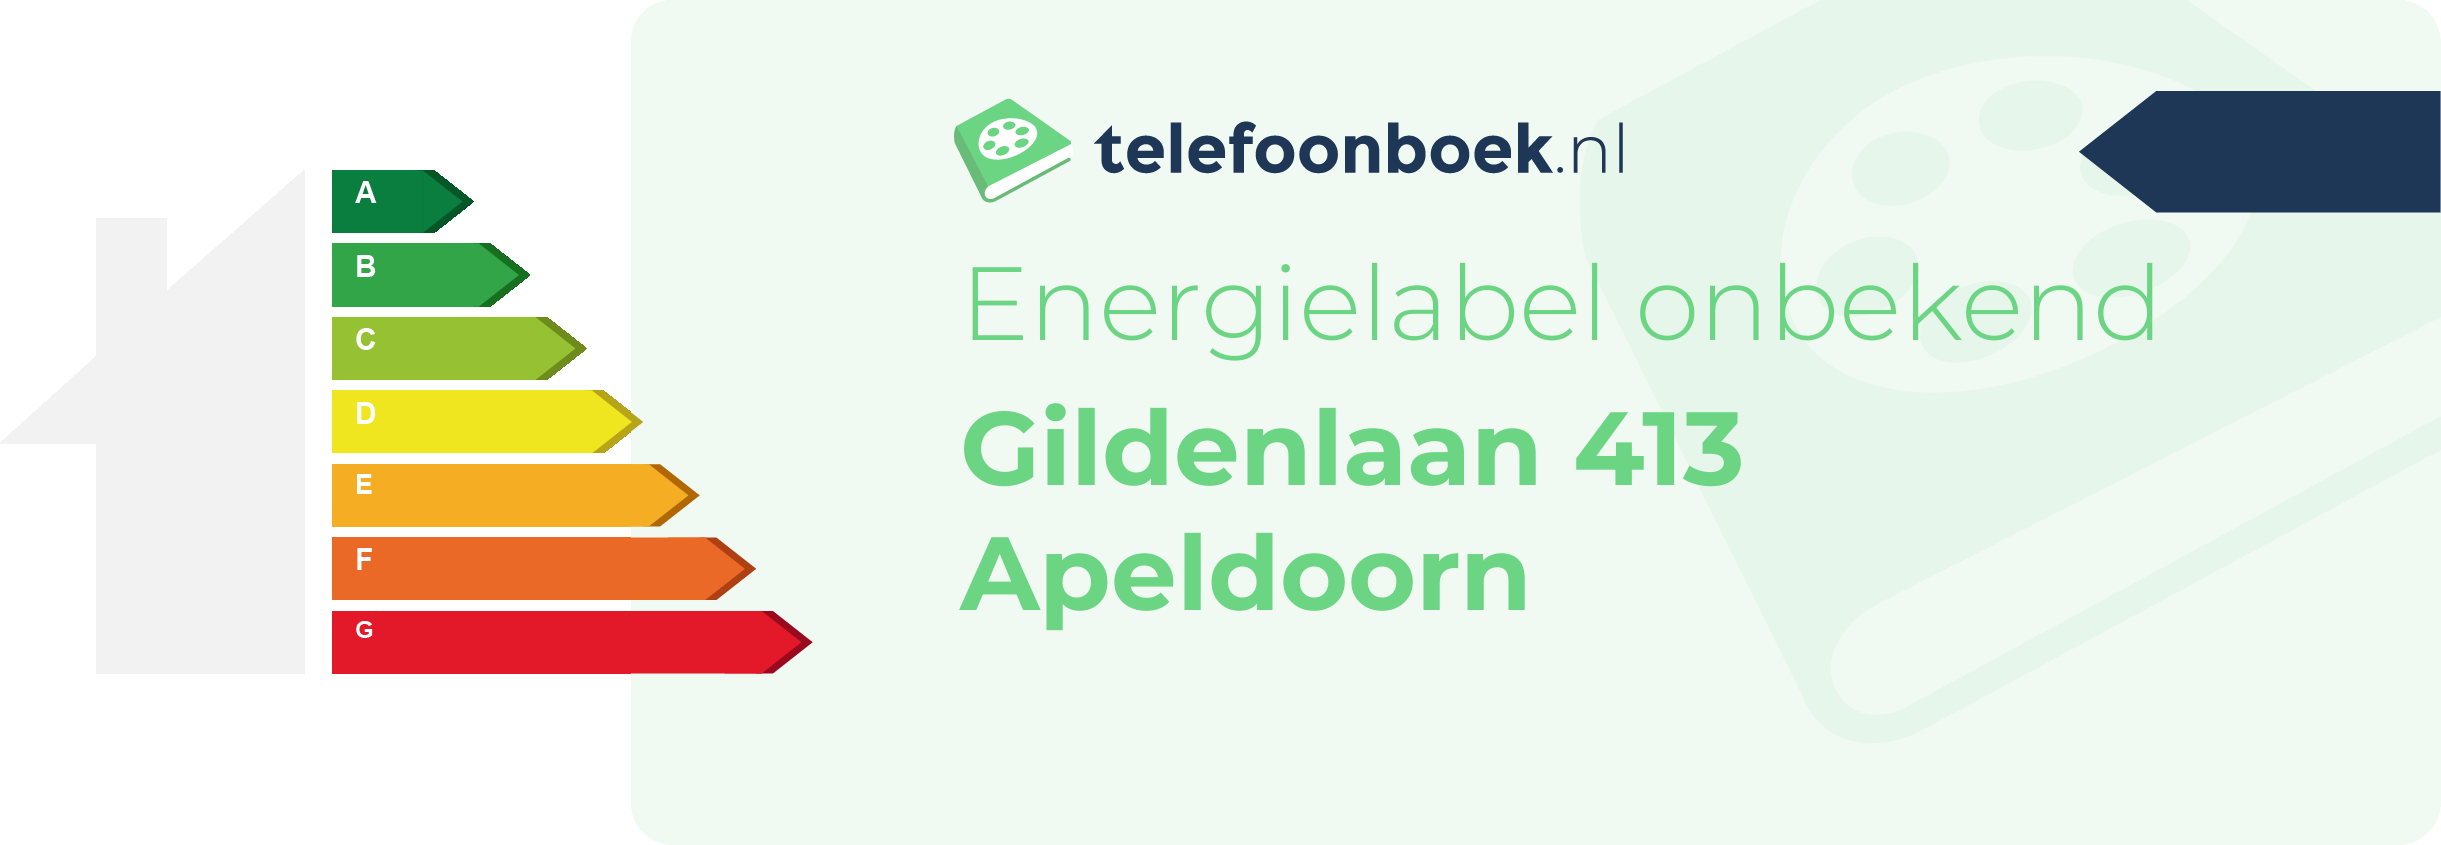 Energielabel Gildenlaan 413 Apeldoorn